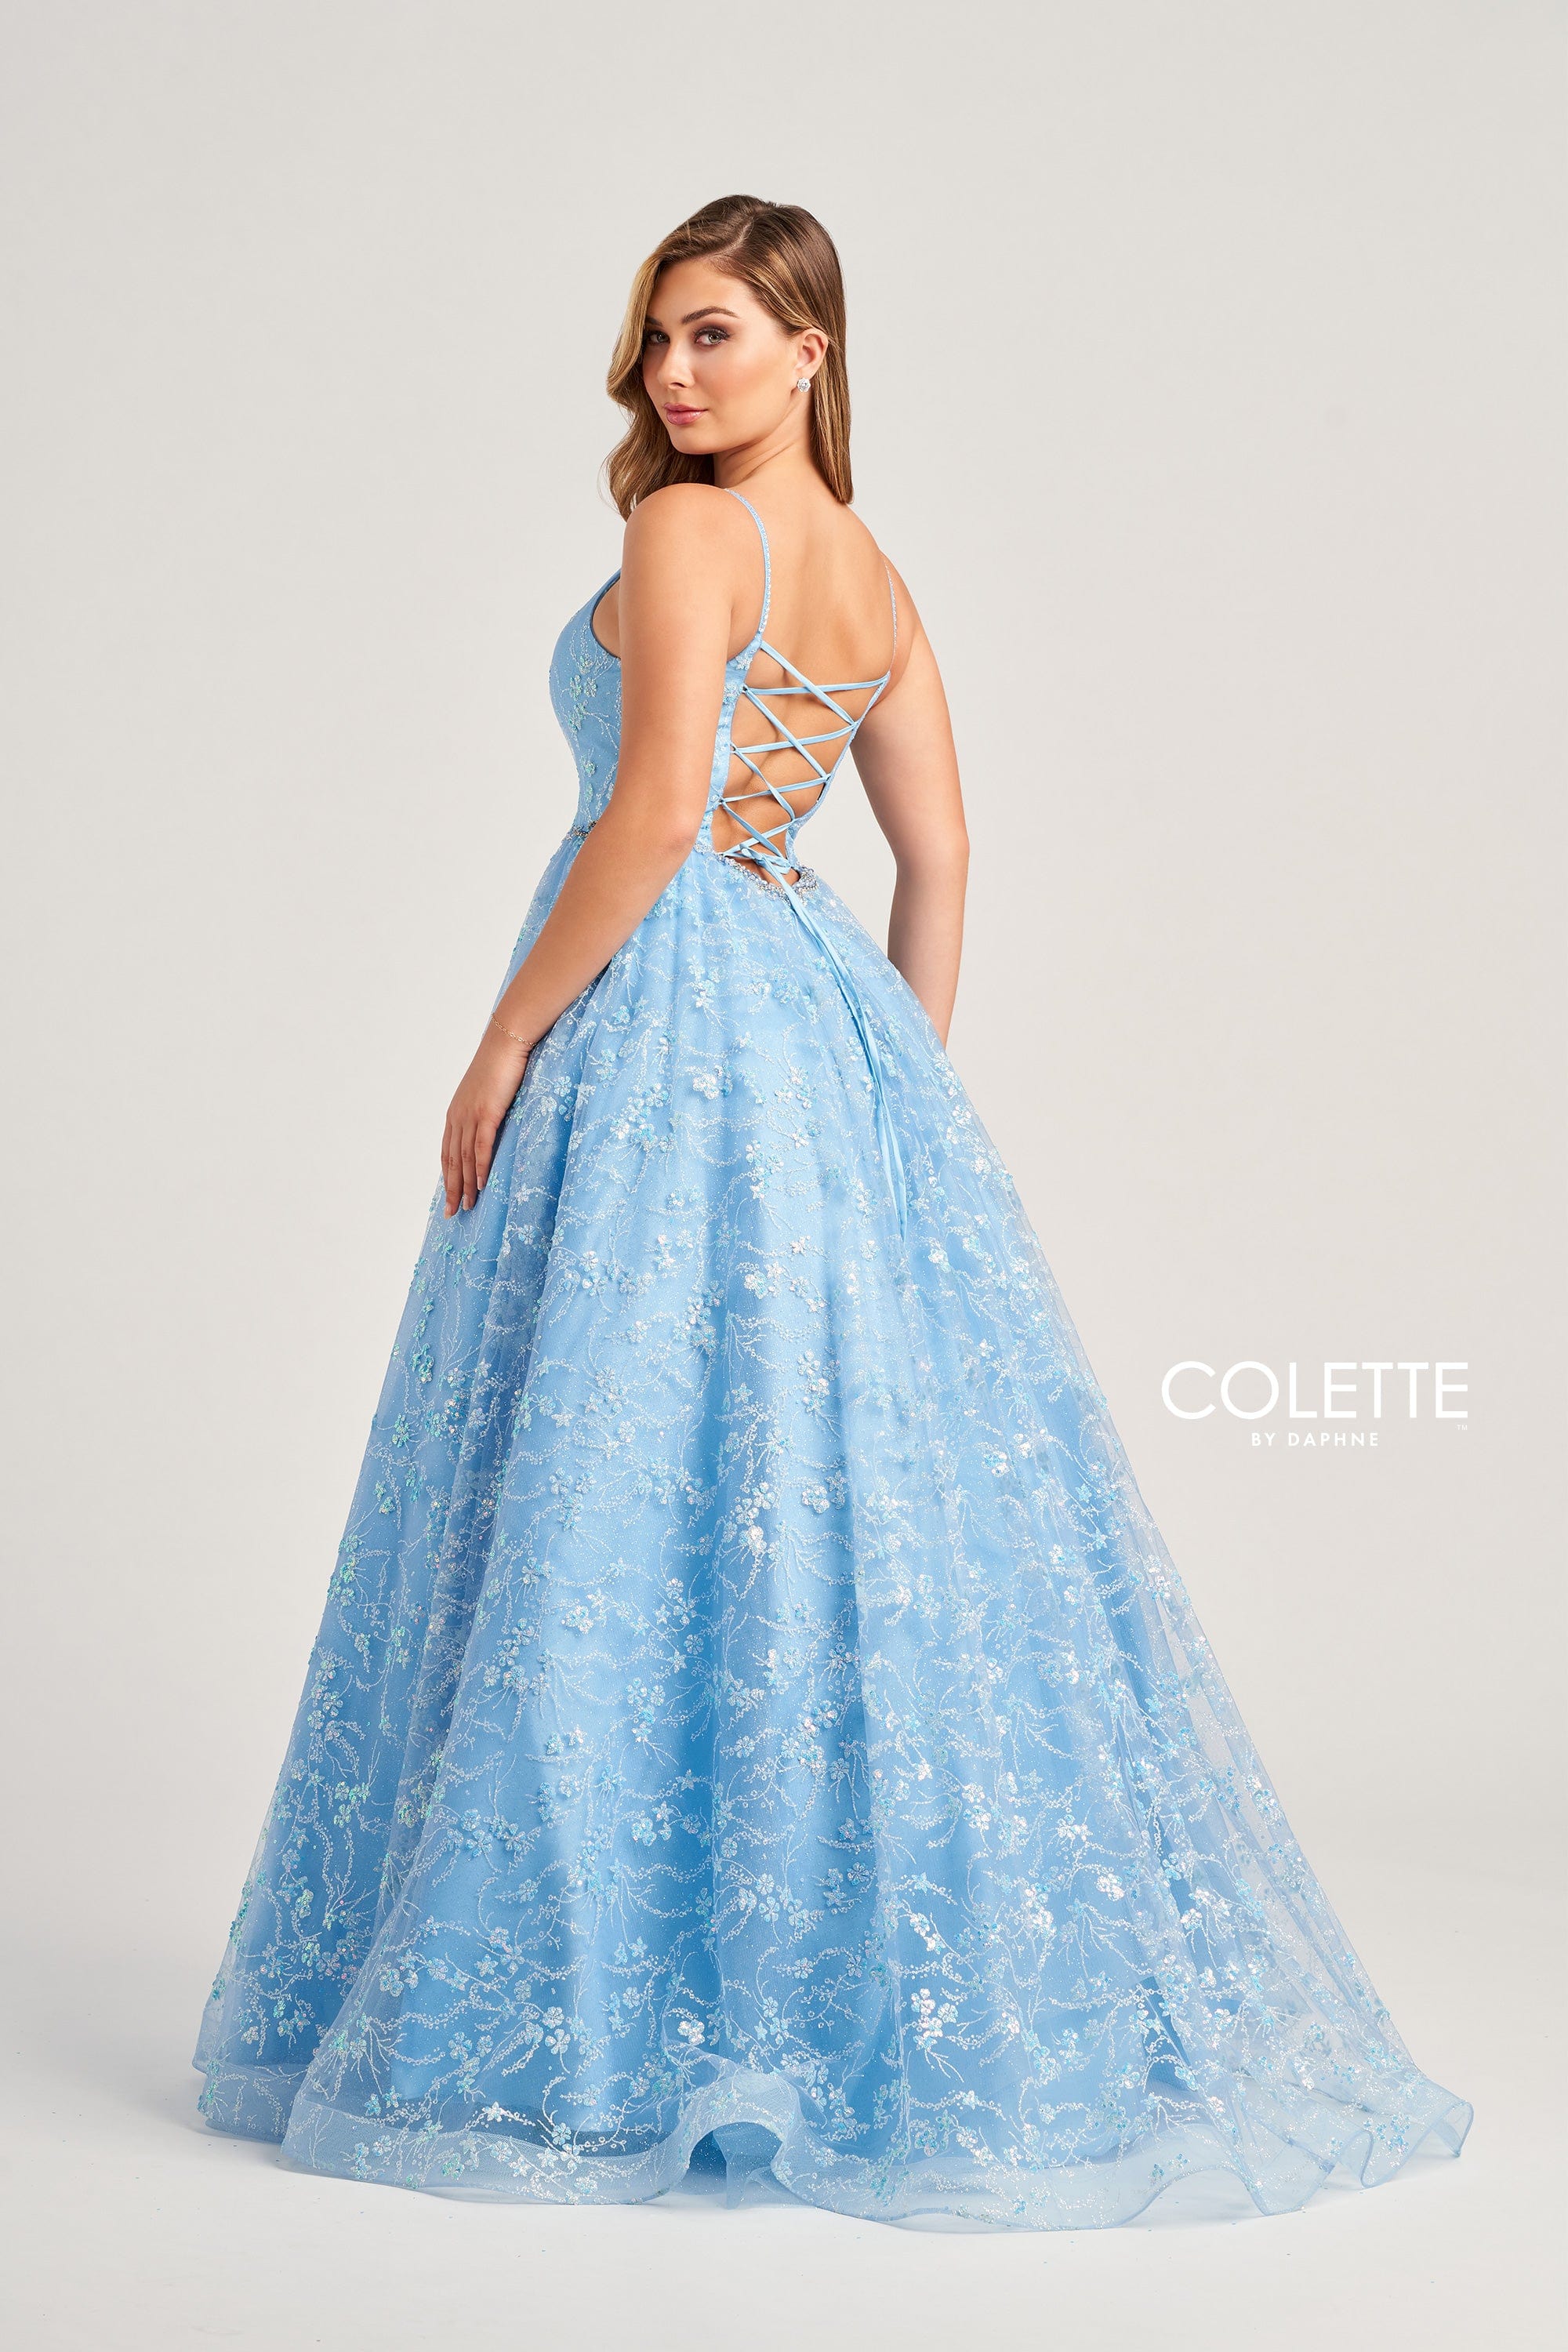 Colette for Mon Cheri Prom Colette: CL5288